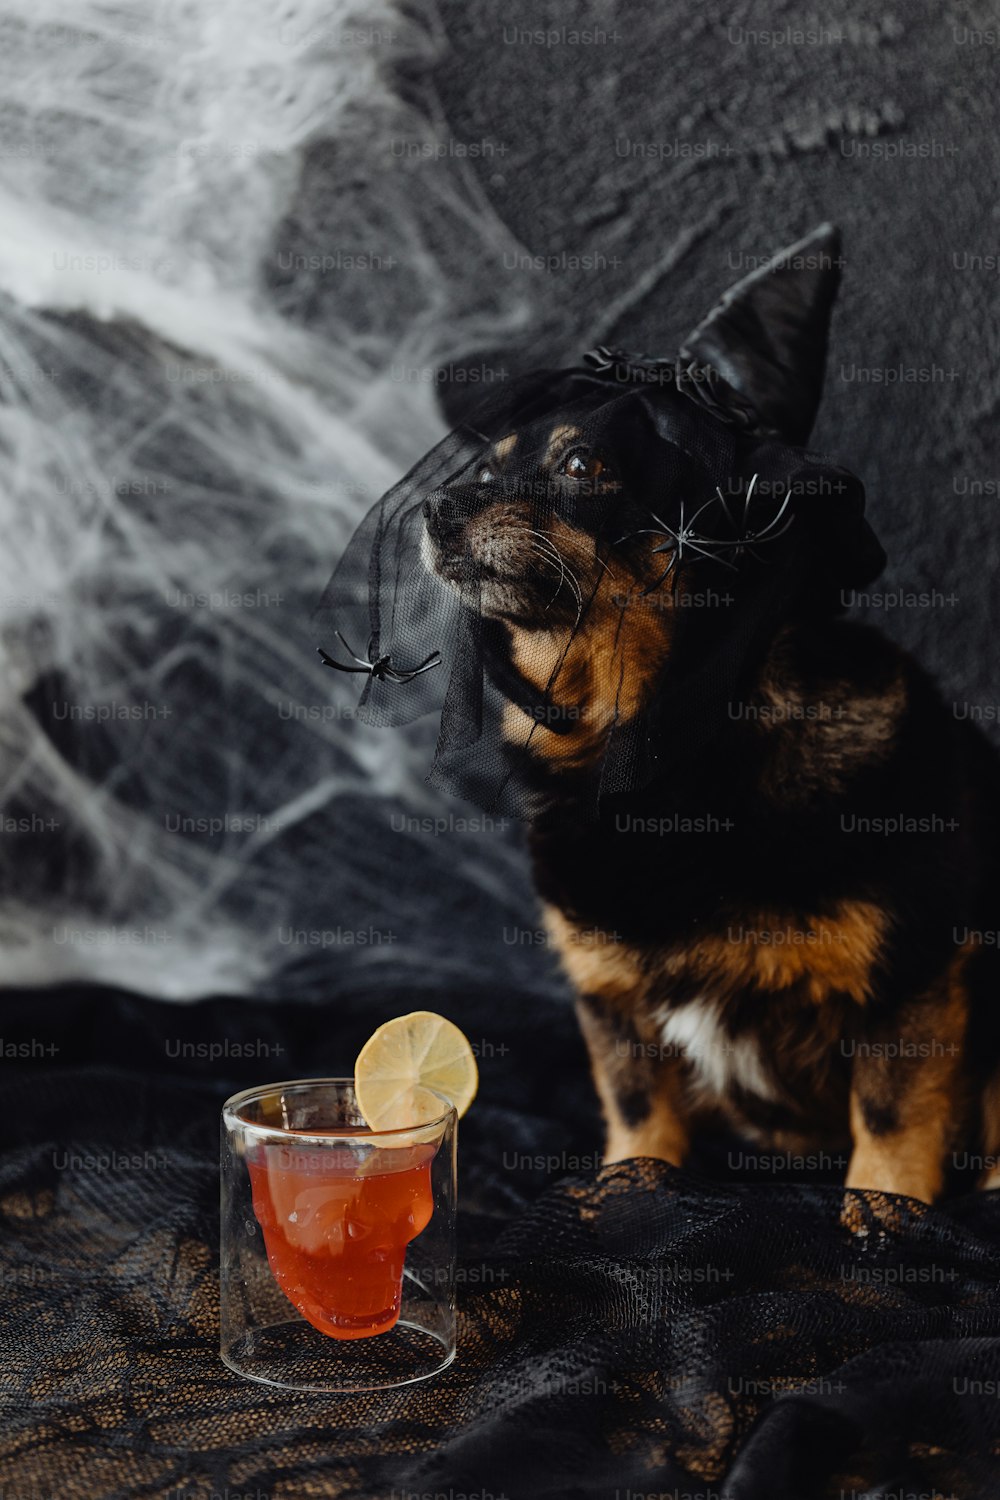 Ein kleiner Hund, der neben einem Glas mit einem Getränk darin sitzt